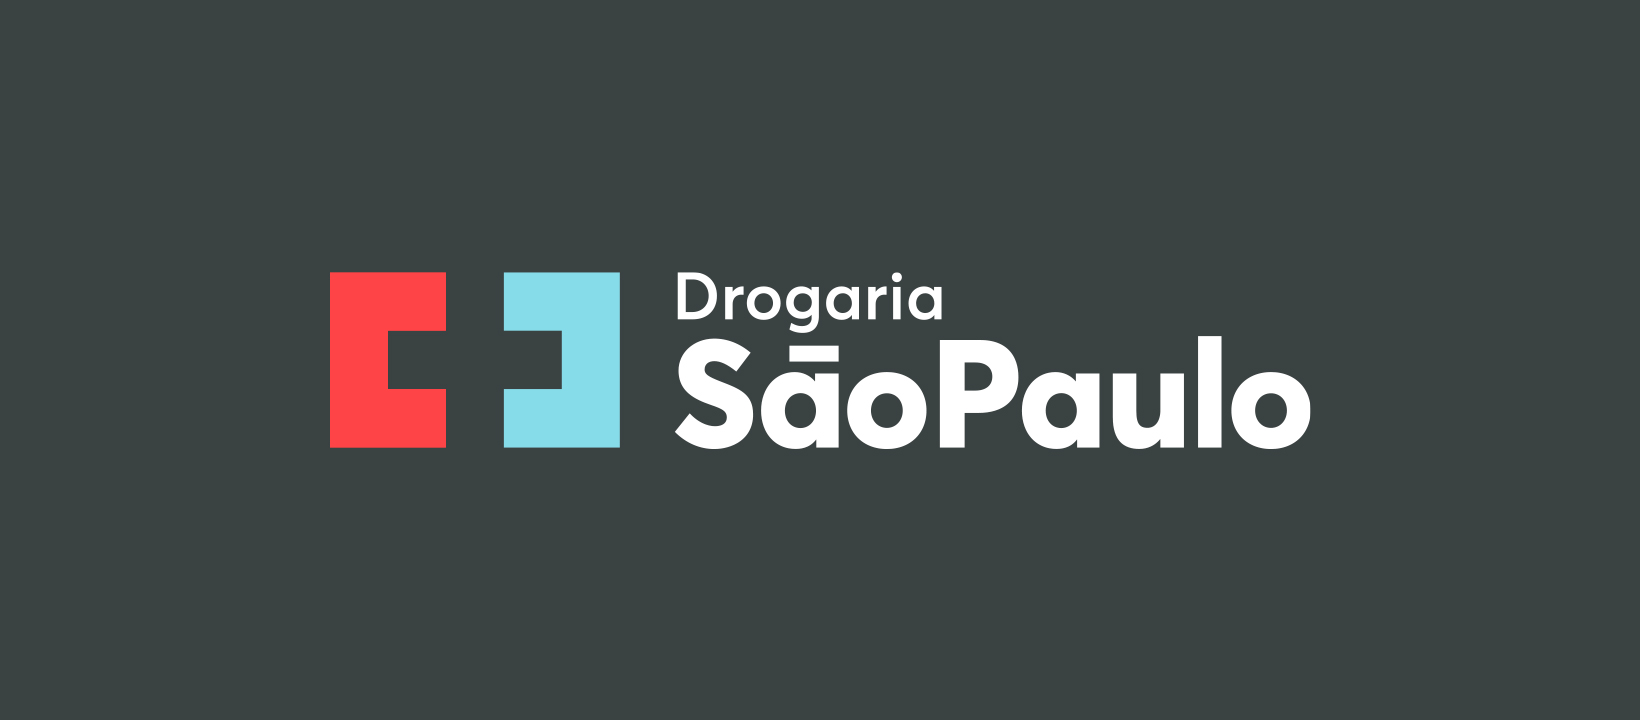 Drogaria São Paulo completa 80 anos – CidadeMarketing